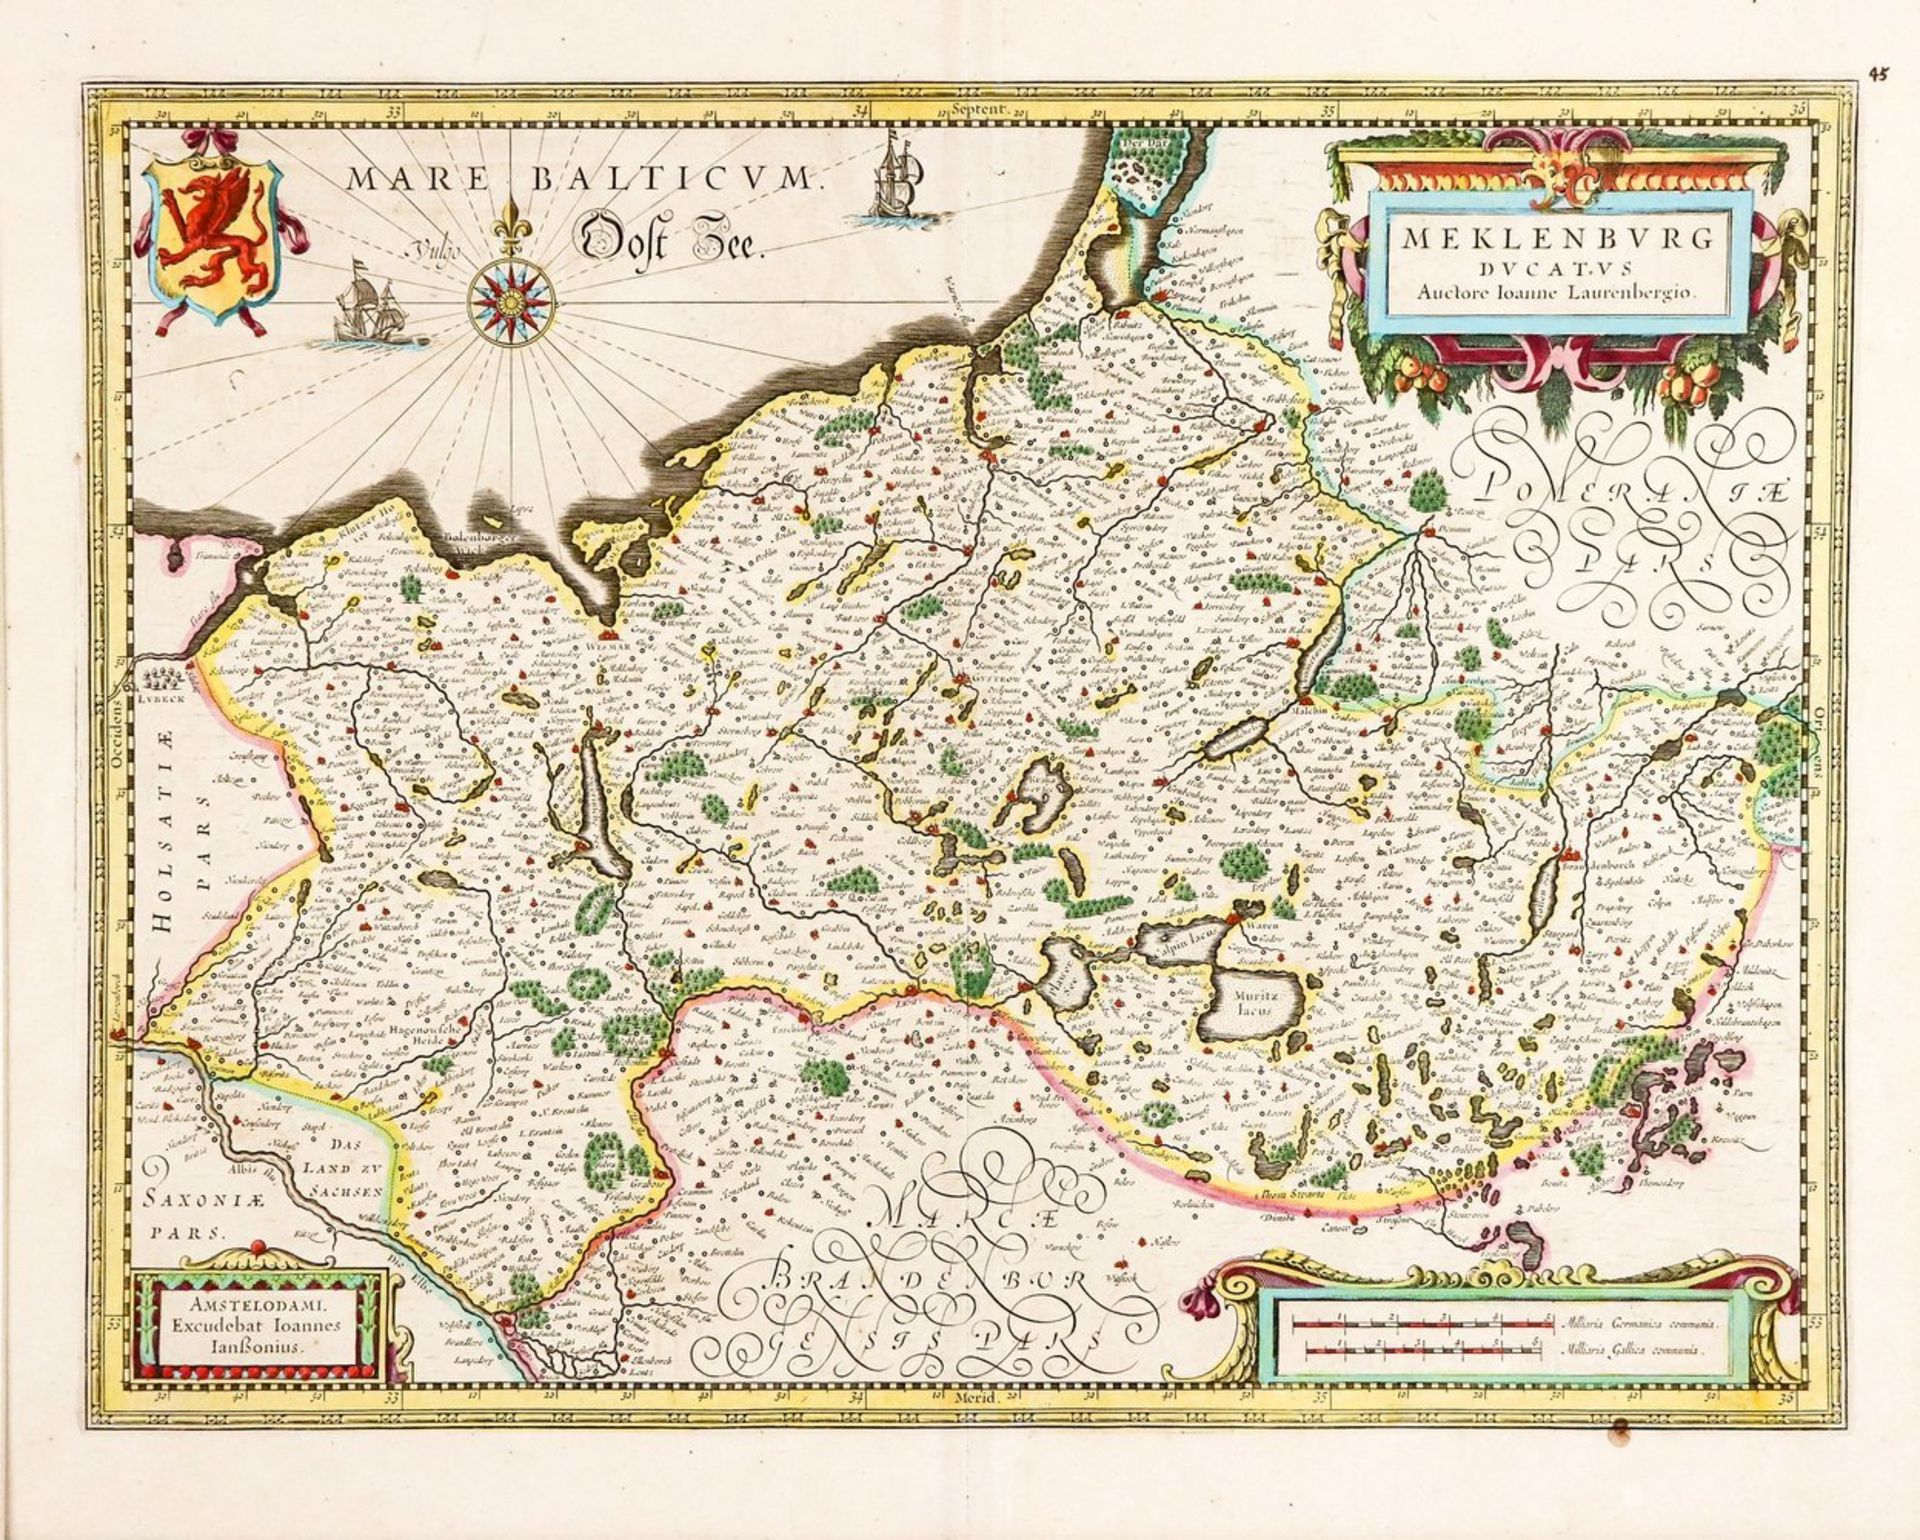 Mecklenburgum 1630/40Meklenburg Ducatus. Kol. Kupferstich mit zwei Kartuschen, Meilenanzeiger,